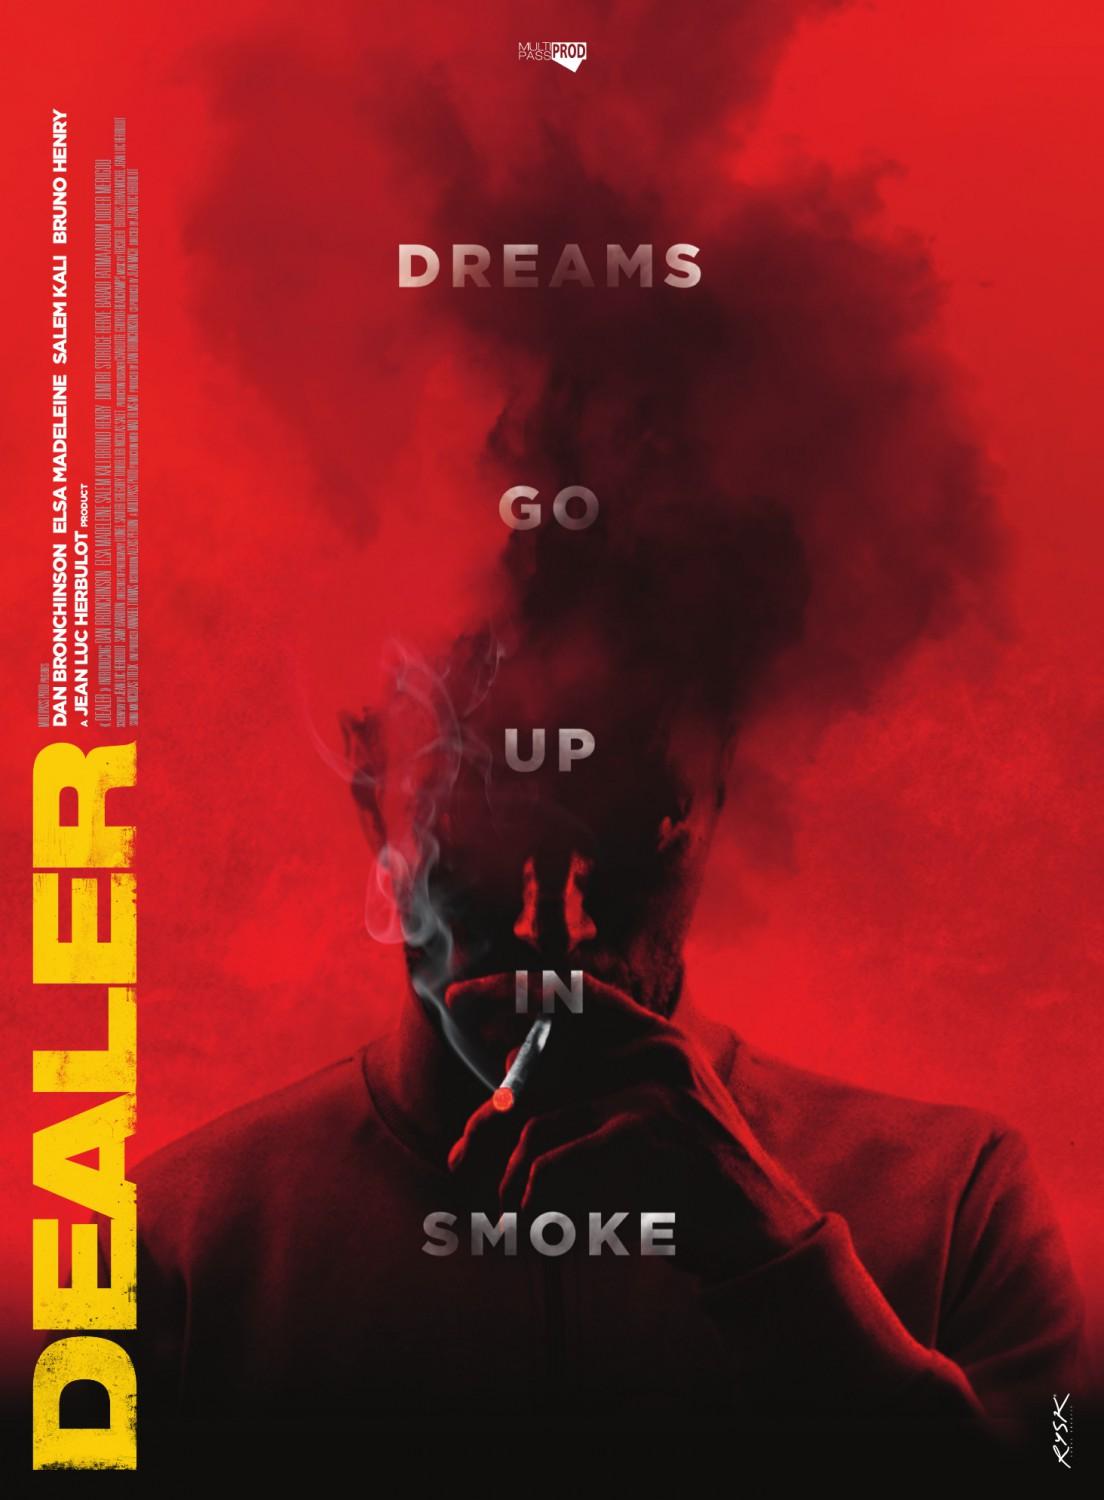 Постер фильма Dealer